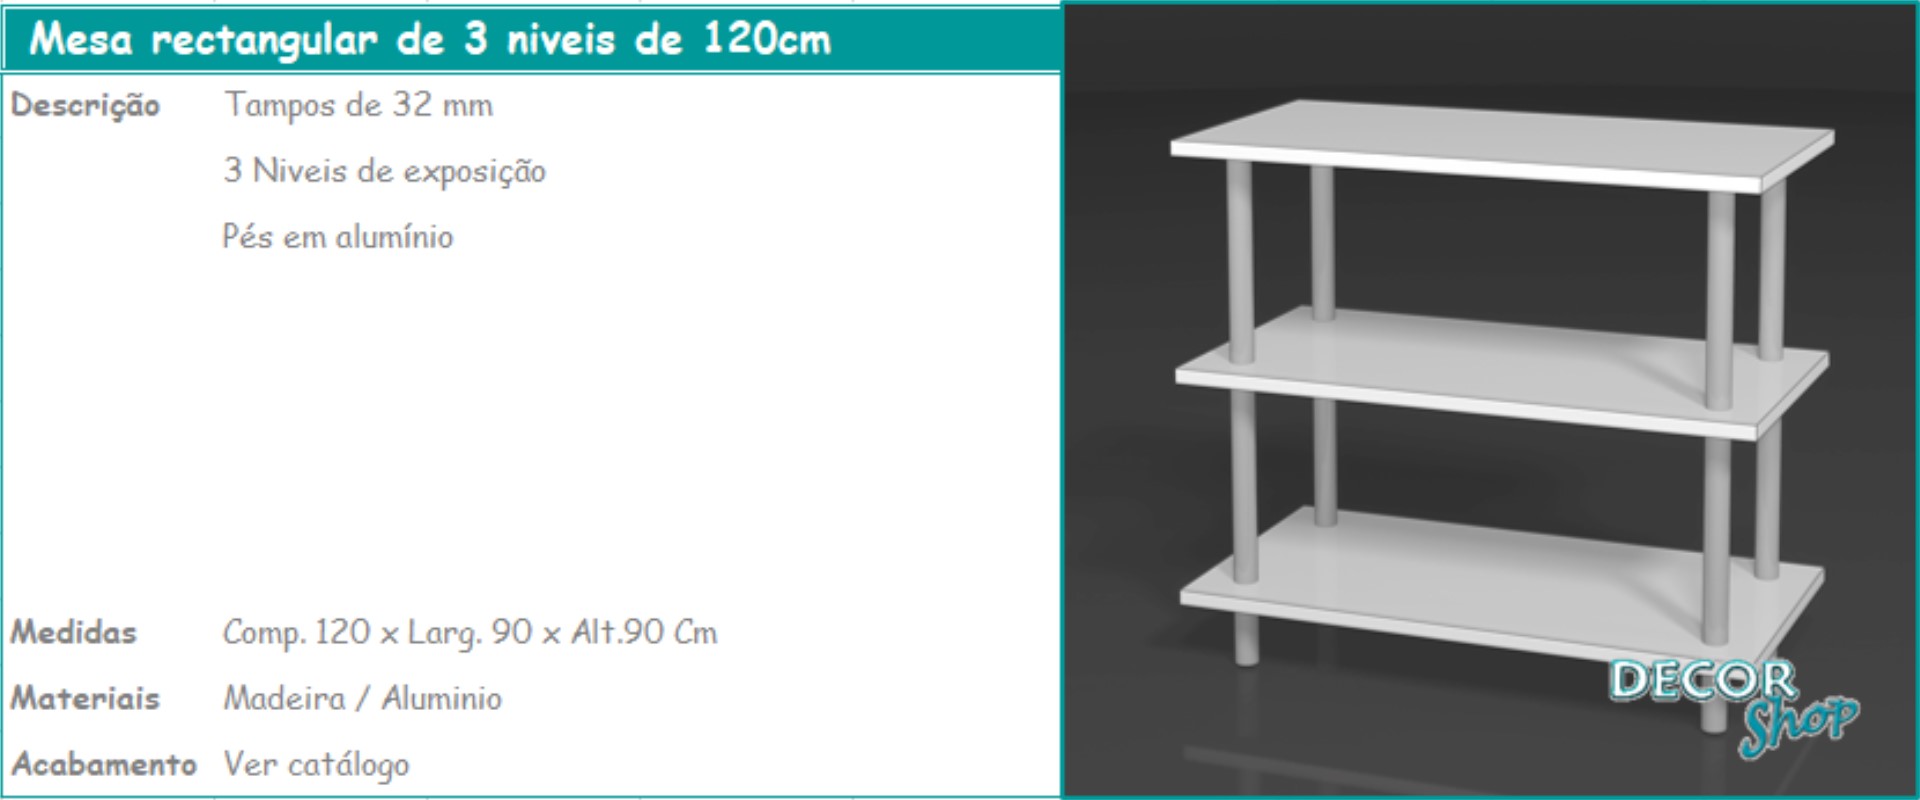 5 - Mesa rectangular 3 niveis de 100cm